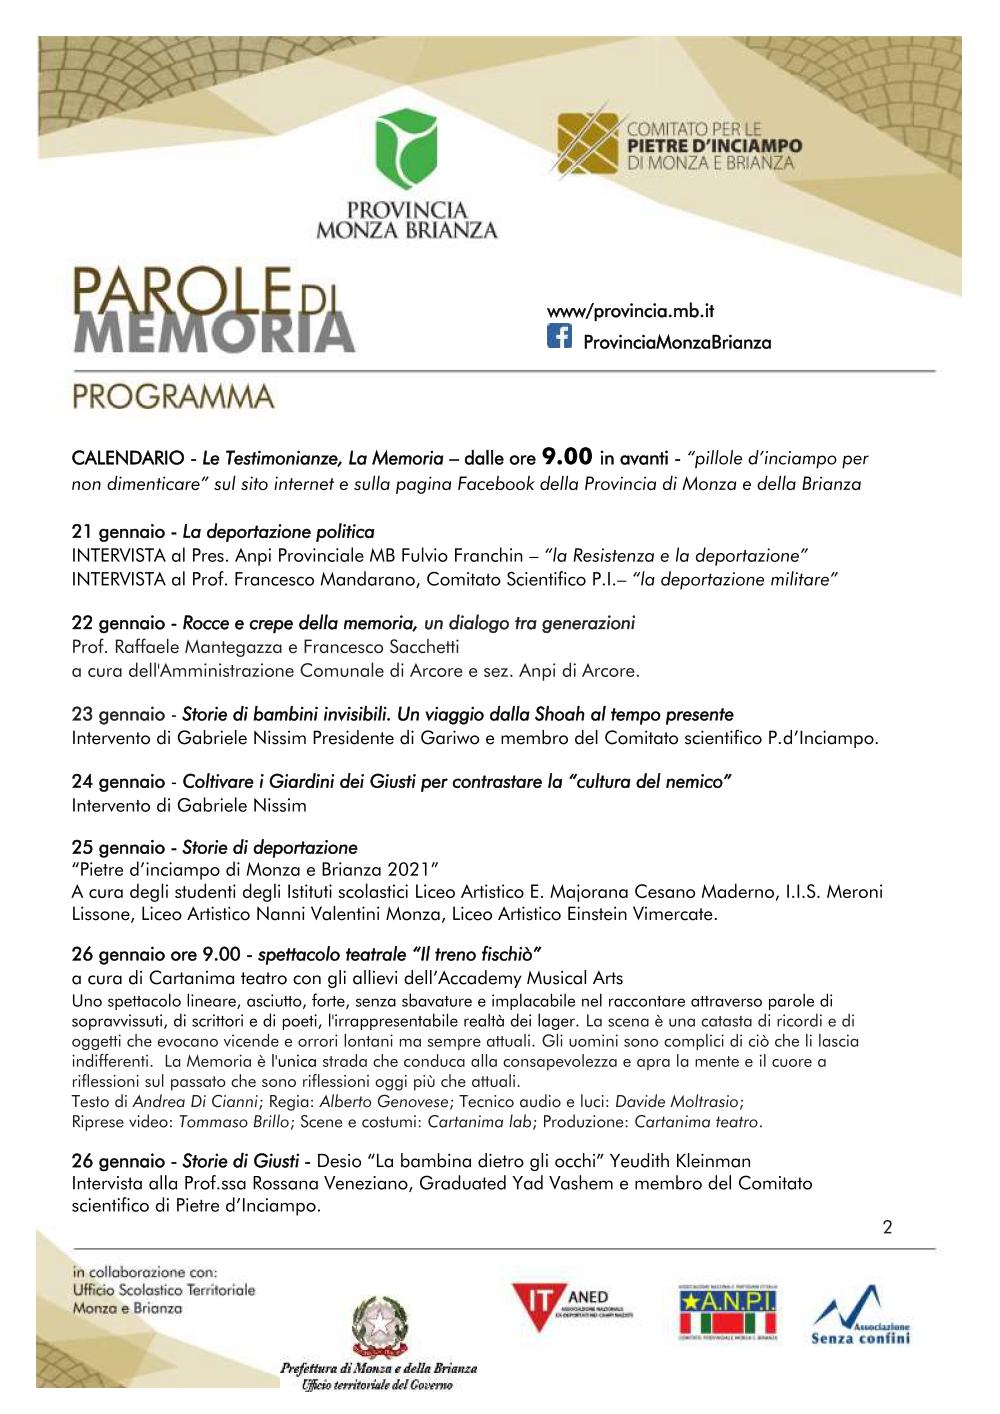 Manifesto dell'evento on line promosso dal comitato Pietere d'Inciampo e dalla Provincia di Monza Brianza